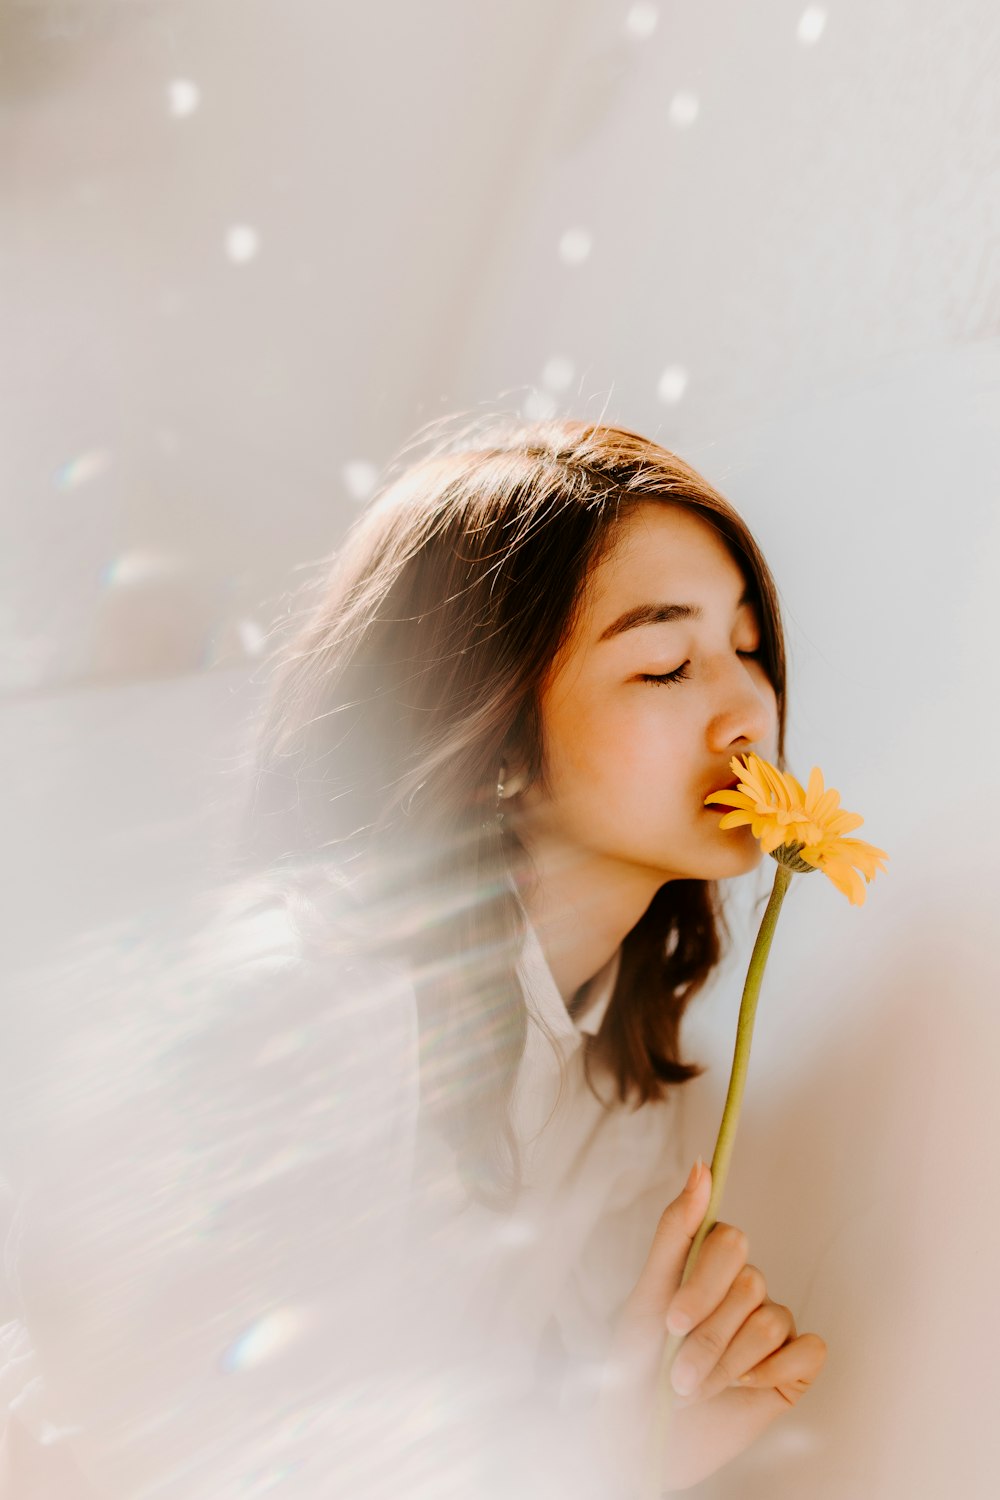 mulher cheirando na flor amarela